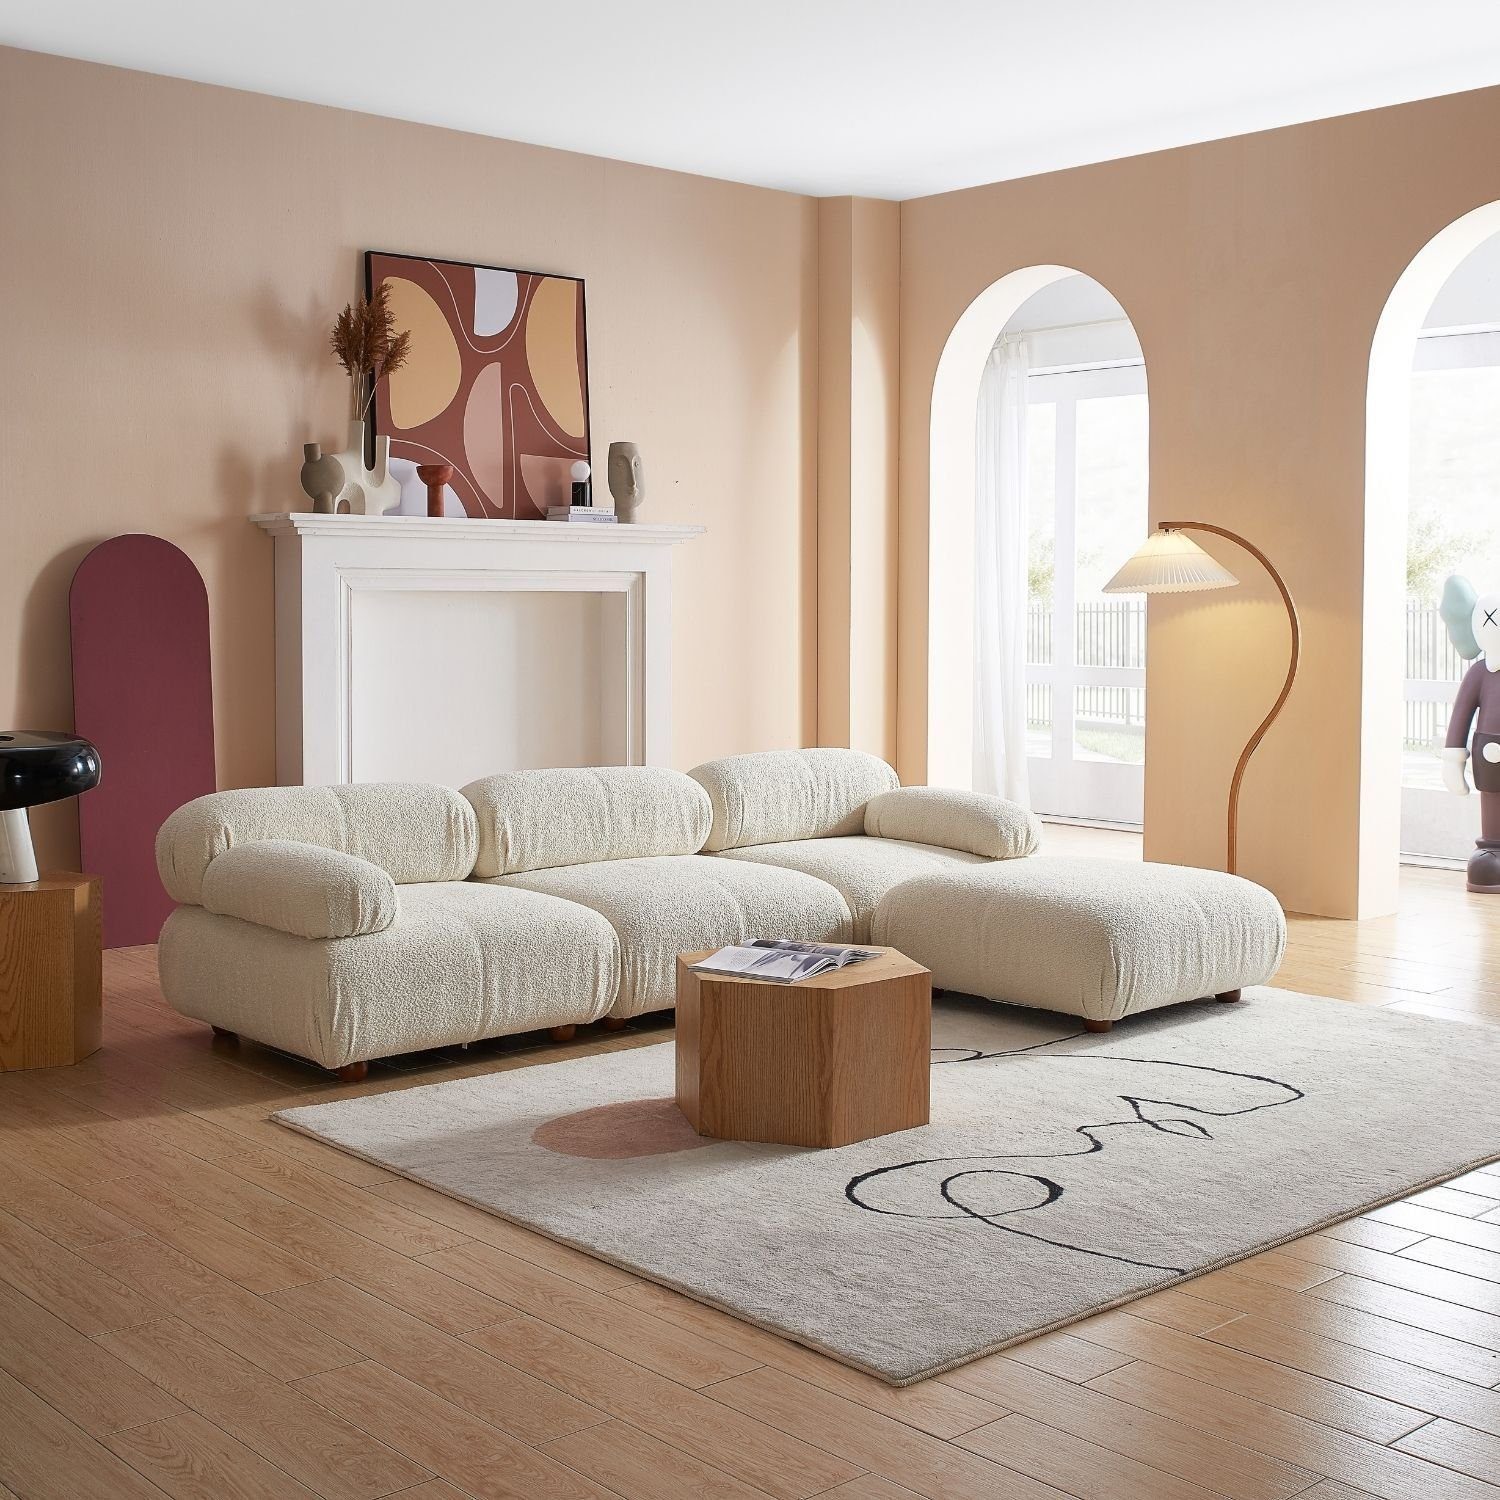 Touch me Sofa enthalten! im Generation und Aufbau aus neueste Sitzmöbel Komfortschaum Preis Schwarz-Lieferung Knuffiges